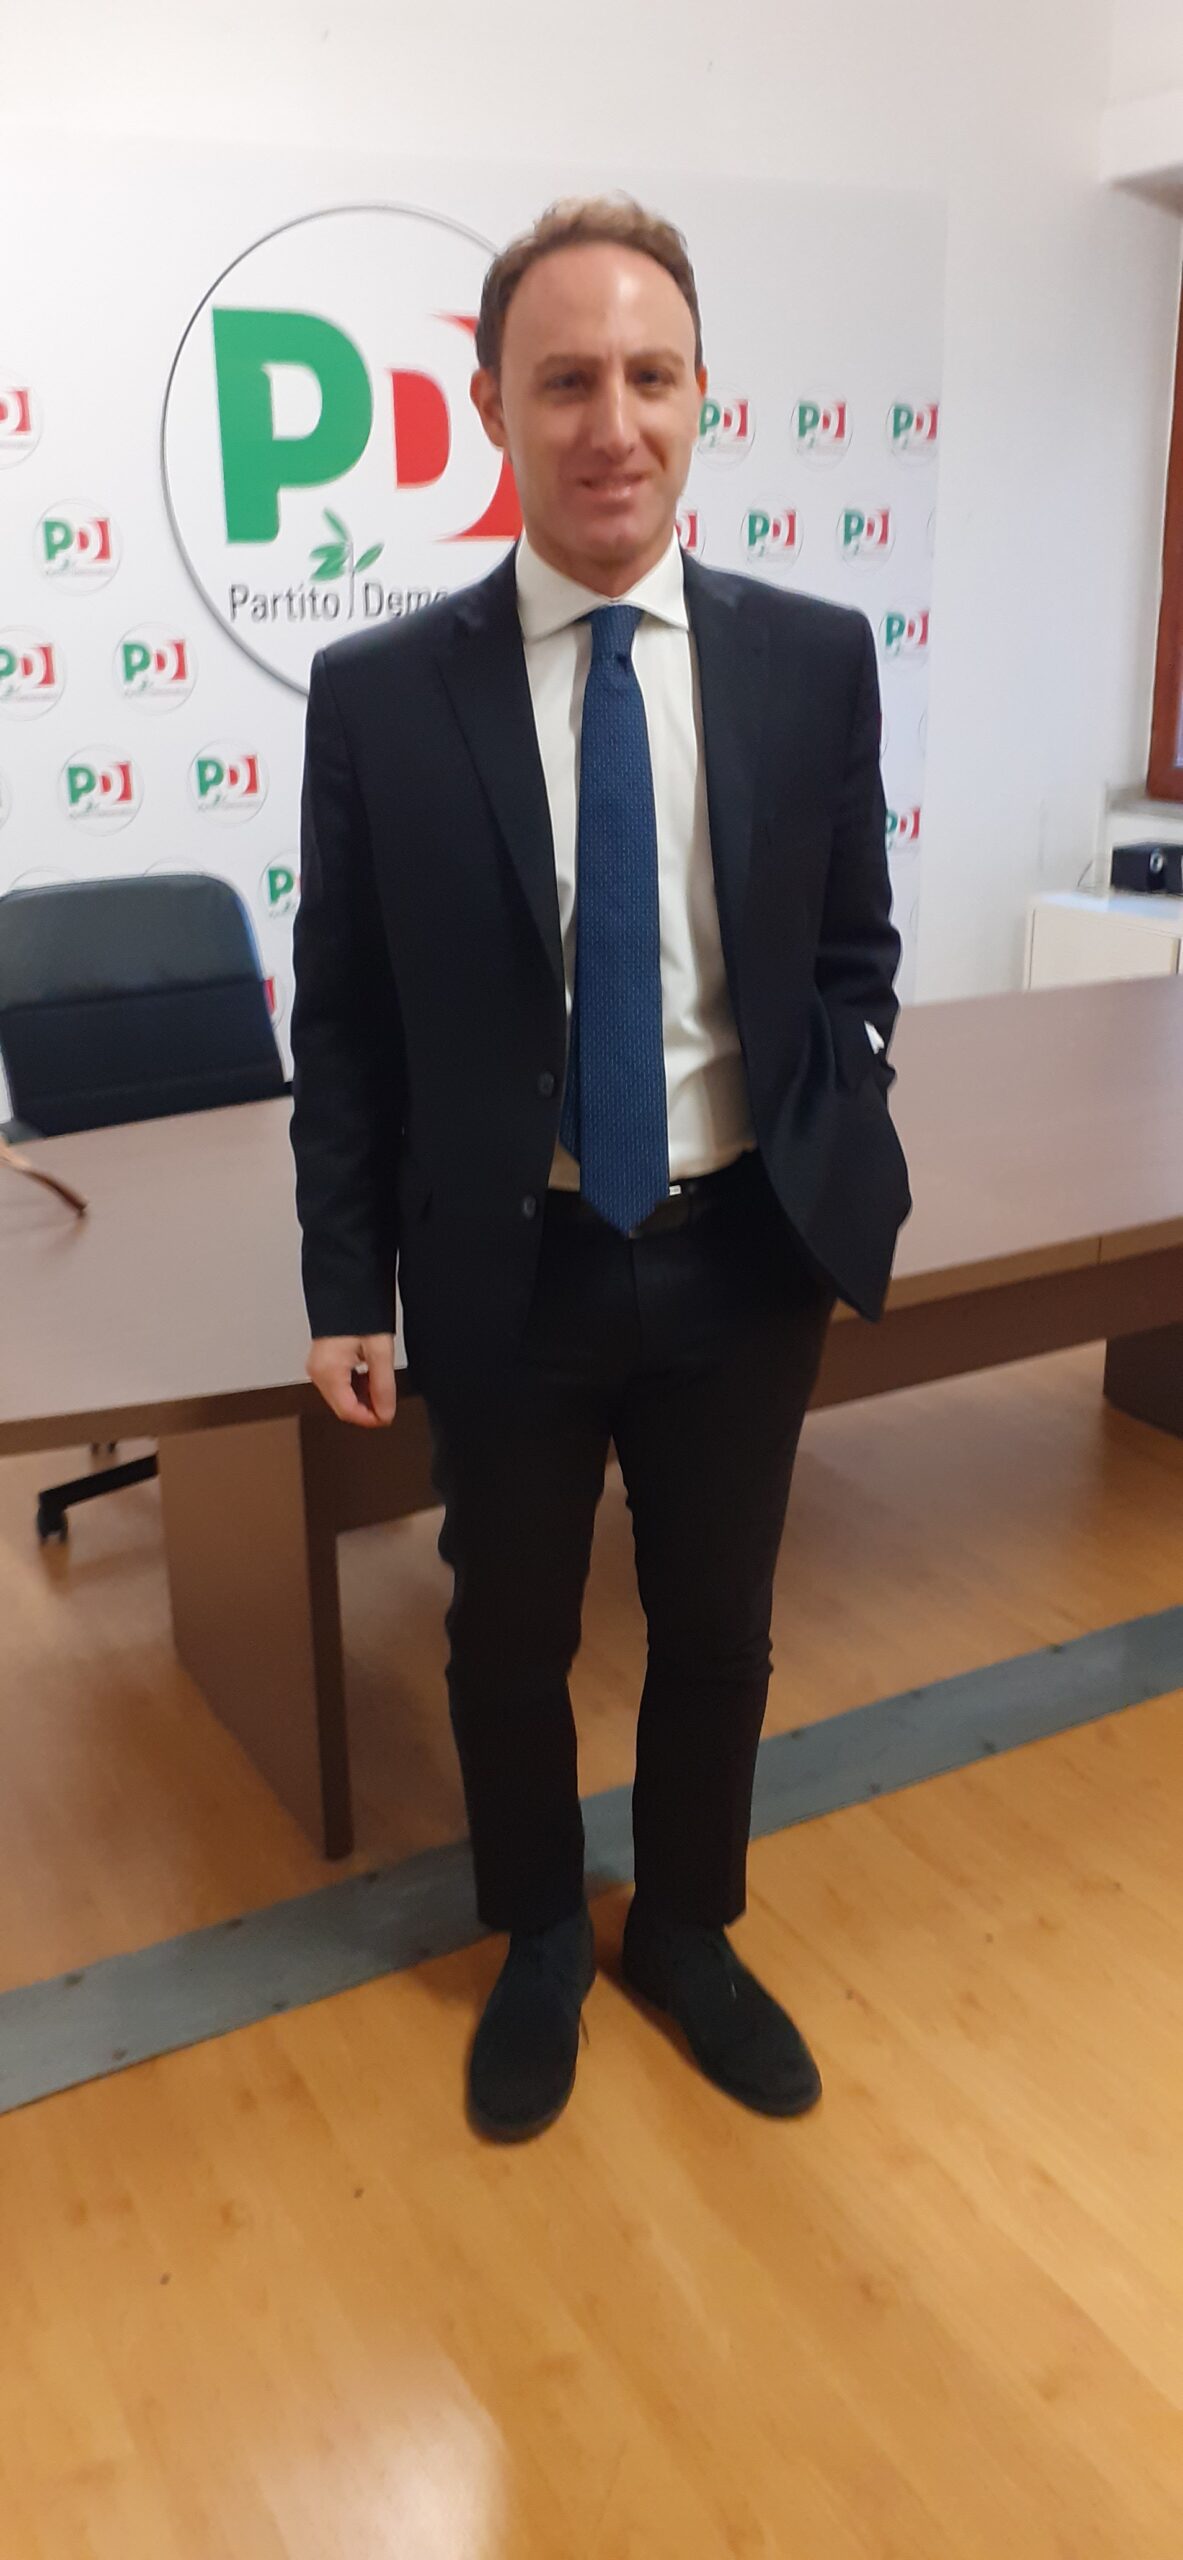 Campania: tesseramento PD, on. Piero De Luca “Massimo rigore, interesse comune di tutti” 